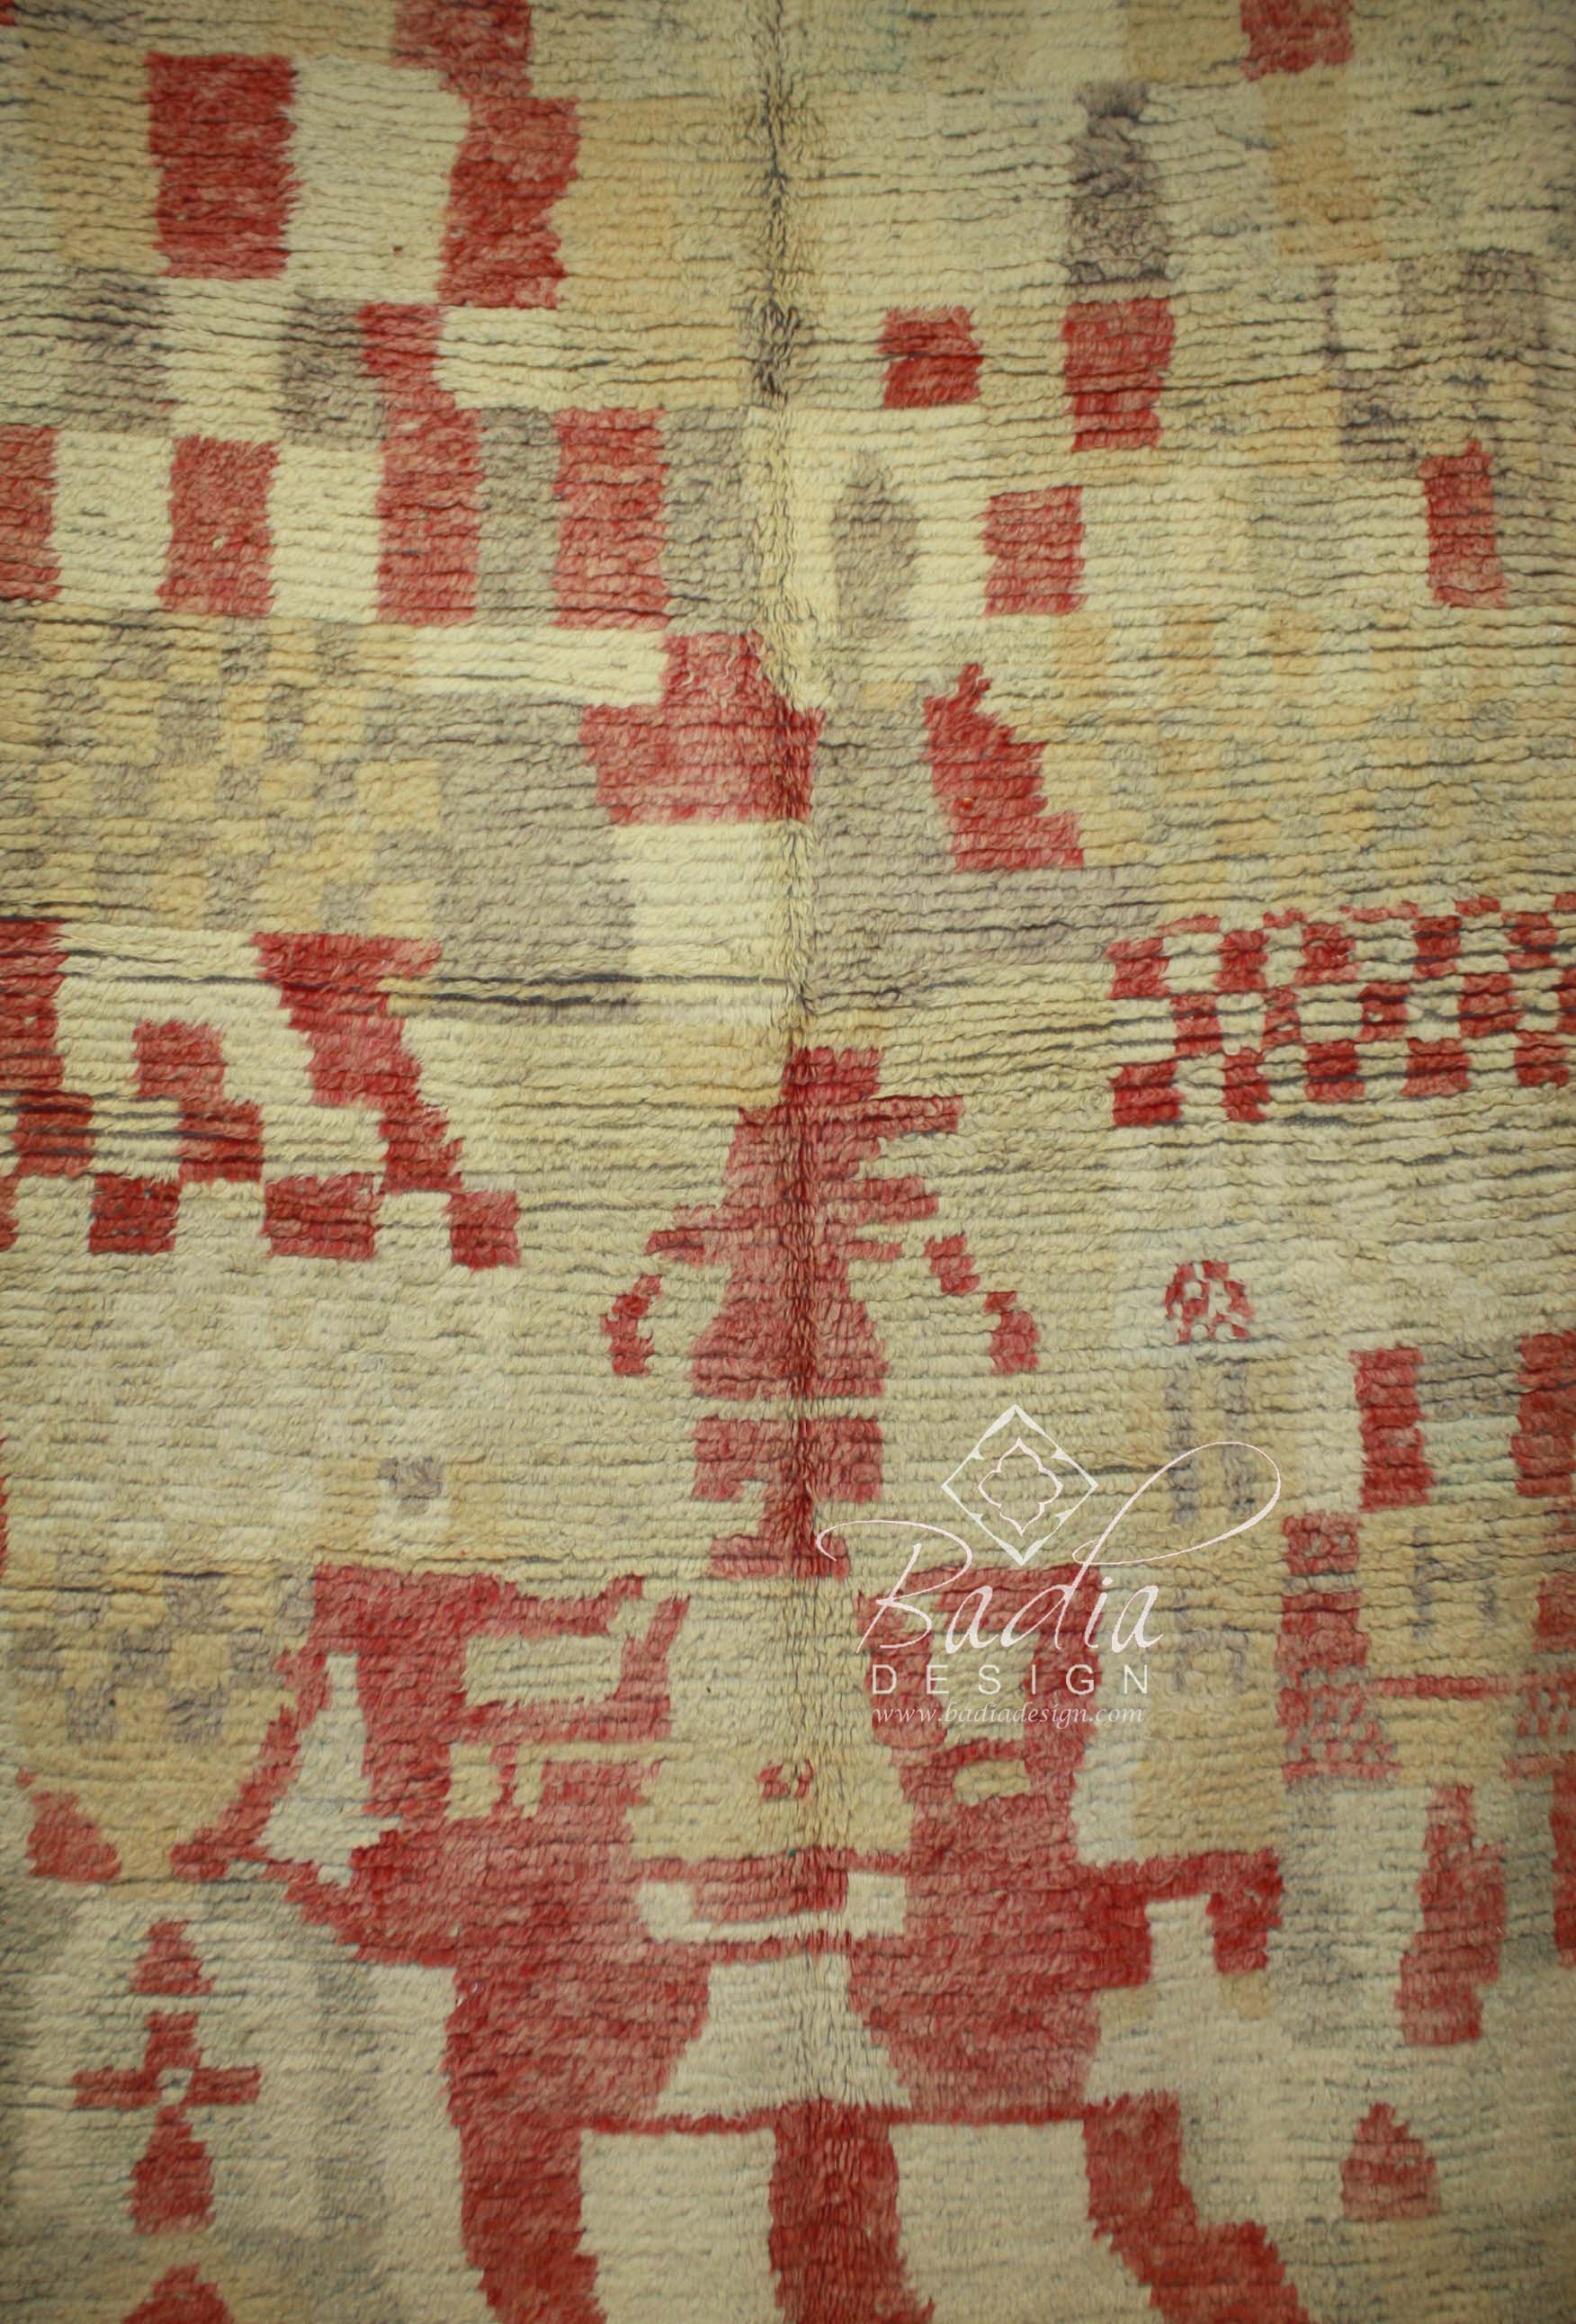 moroccan-berber-rugs-in-los-angeles-r775-2.jpg